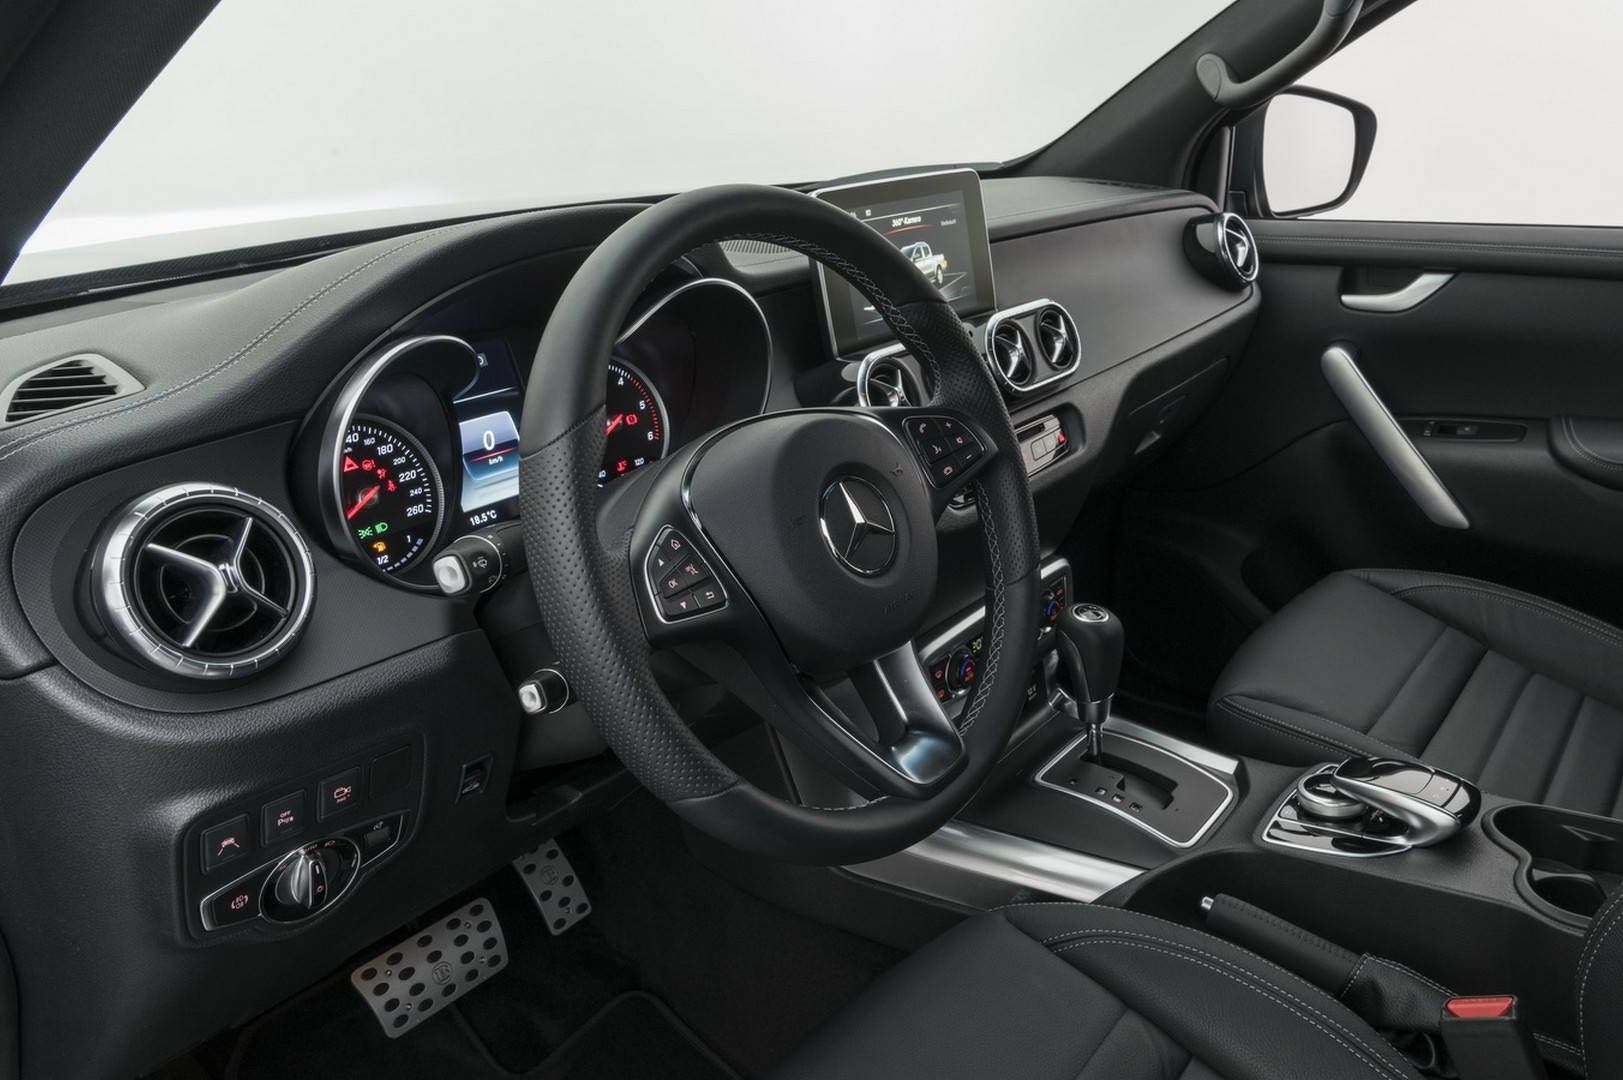 Brabus tuningot kapott a Mercedes-Benz X-osztály - Autónavigátor.hu